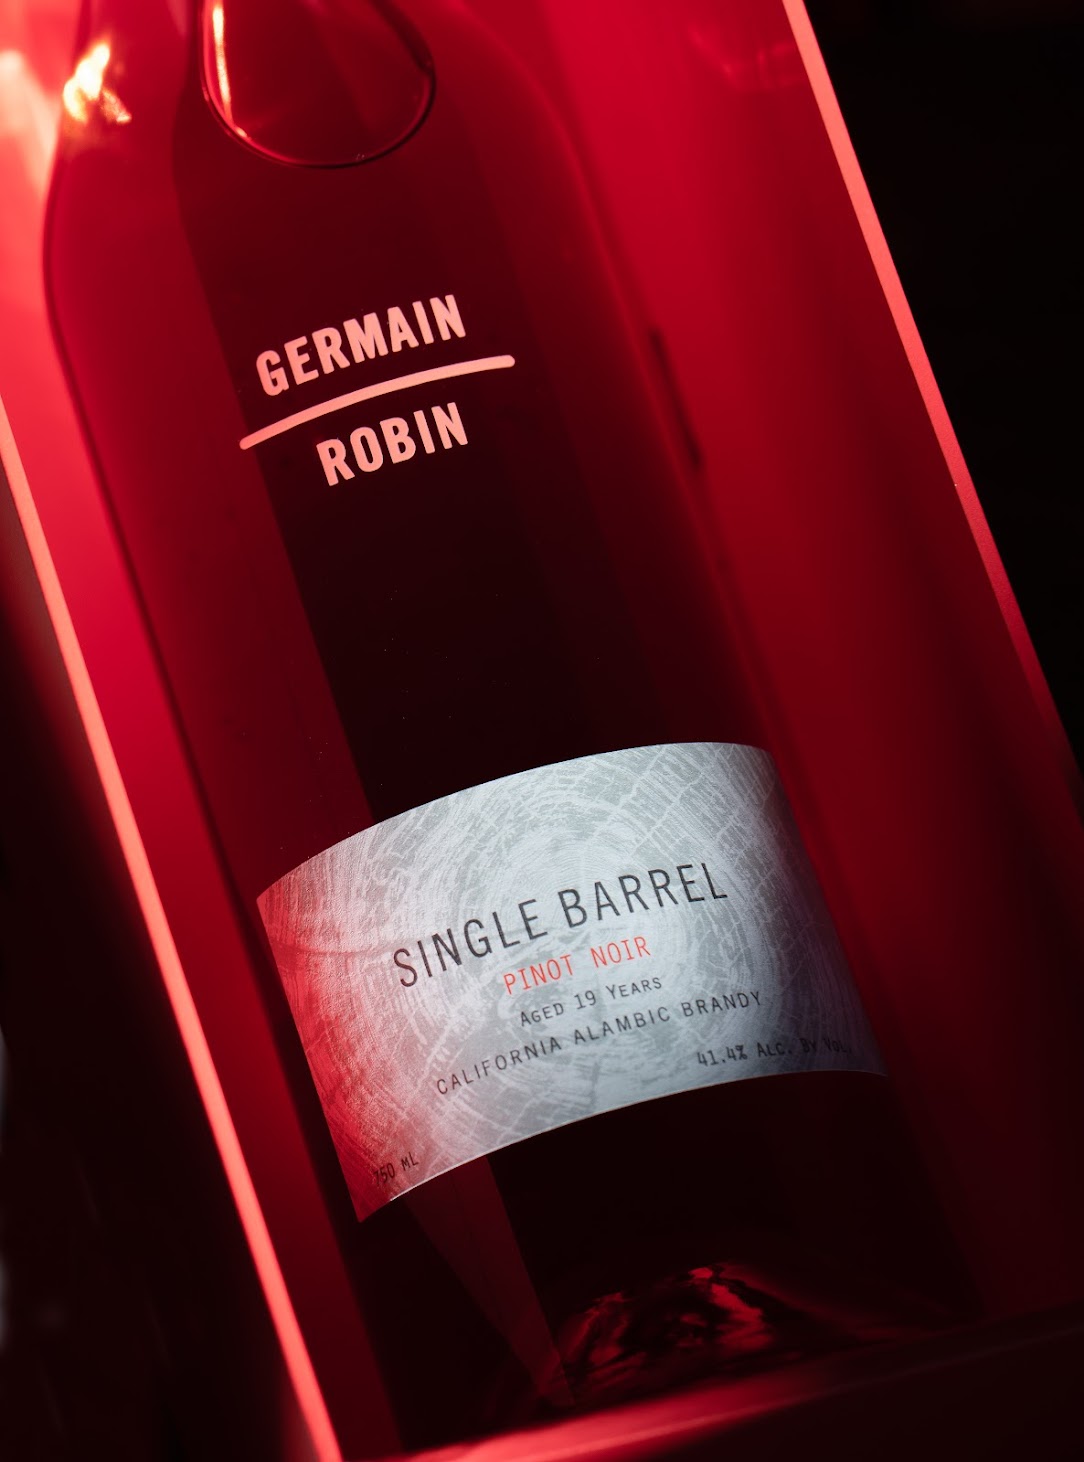 Germain-Robin Single Barrel Pinot Noir brandy bottle box